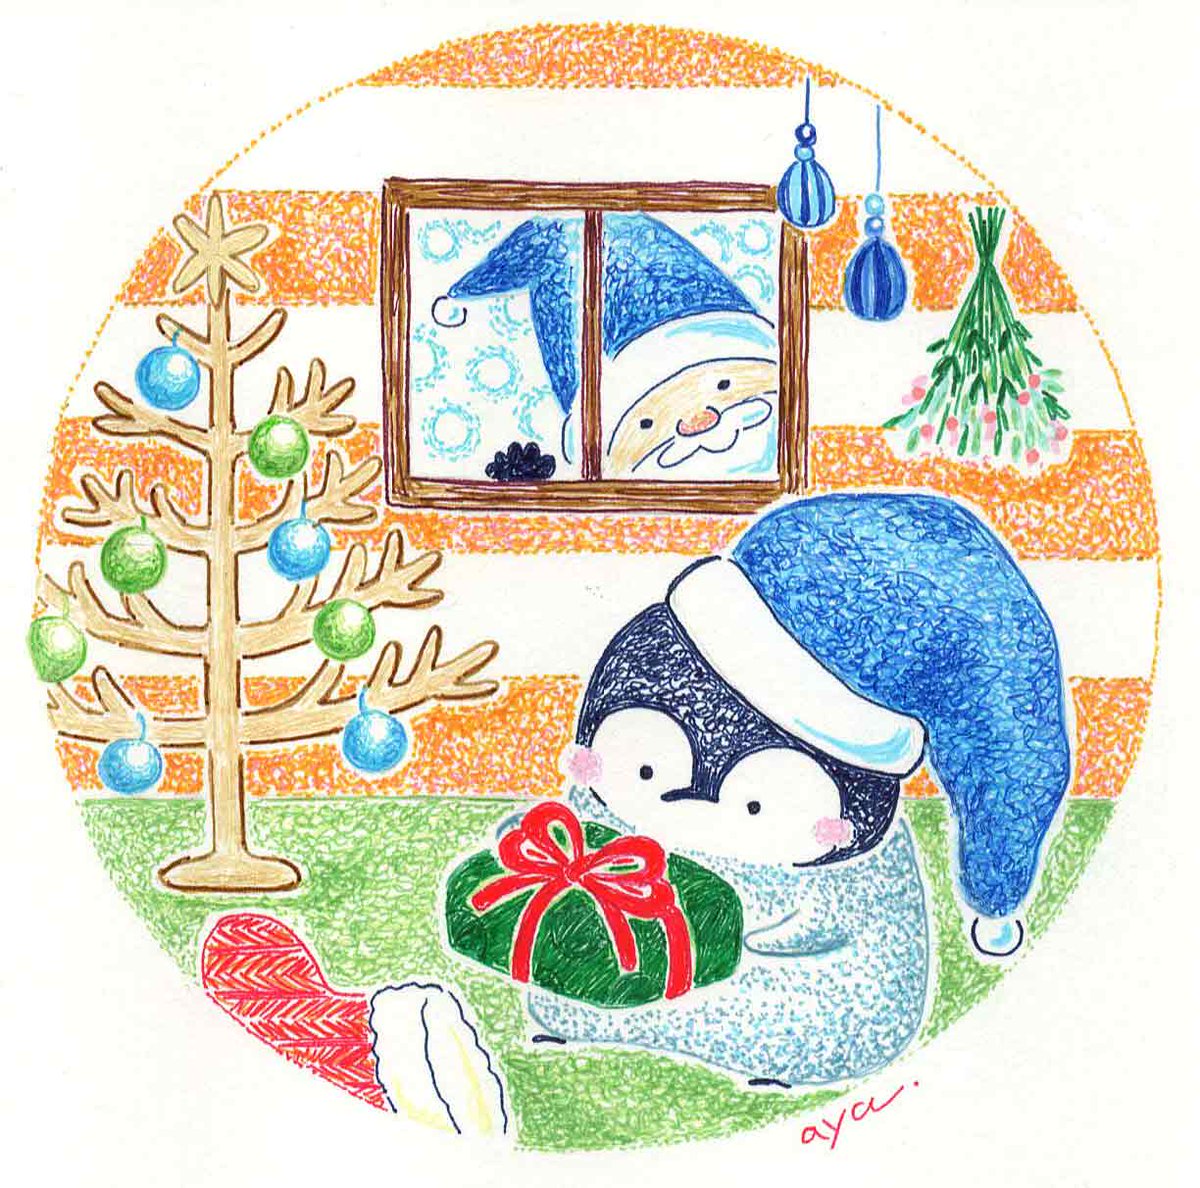 Aya Illustration クリスマスの朝 クリスマスのイラストたまったので 明日まとめアップしまーす ボールペン画 イラスト イラストレーション クリスマス ペンギン 冬 サンタクロース